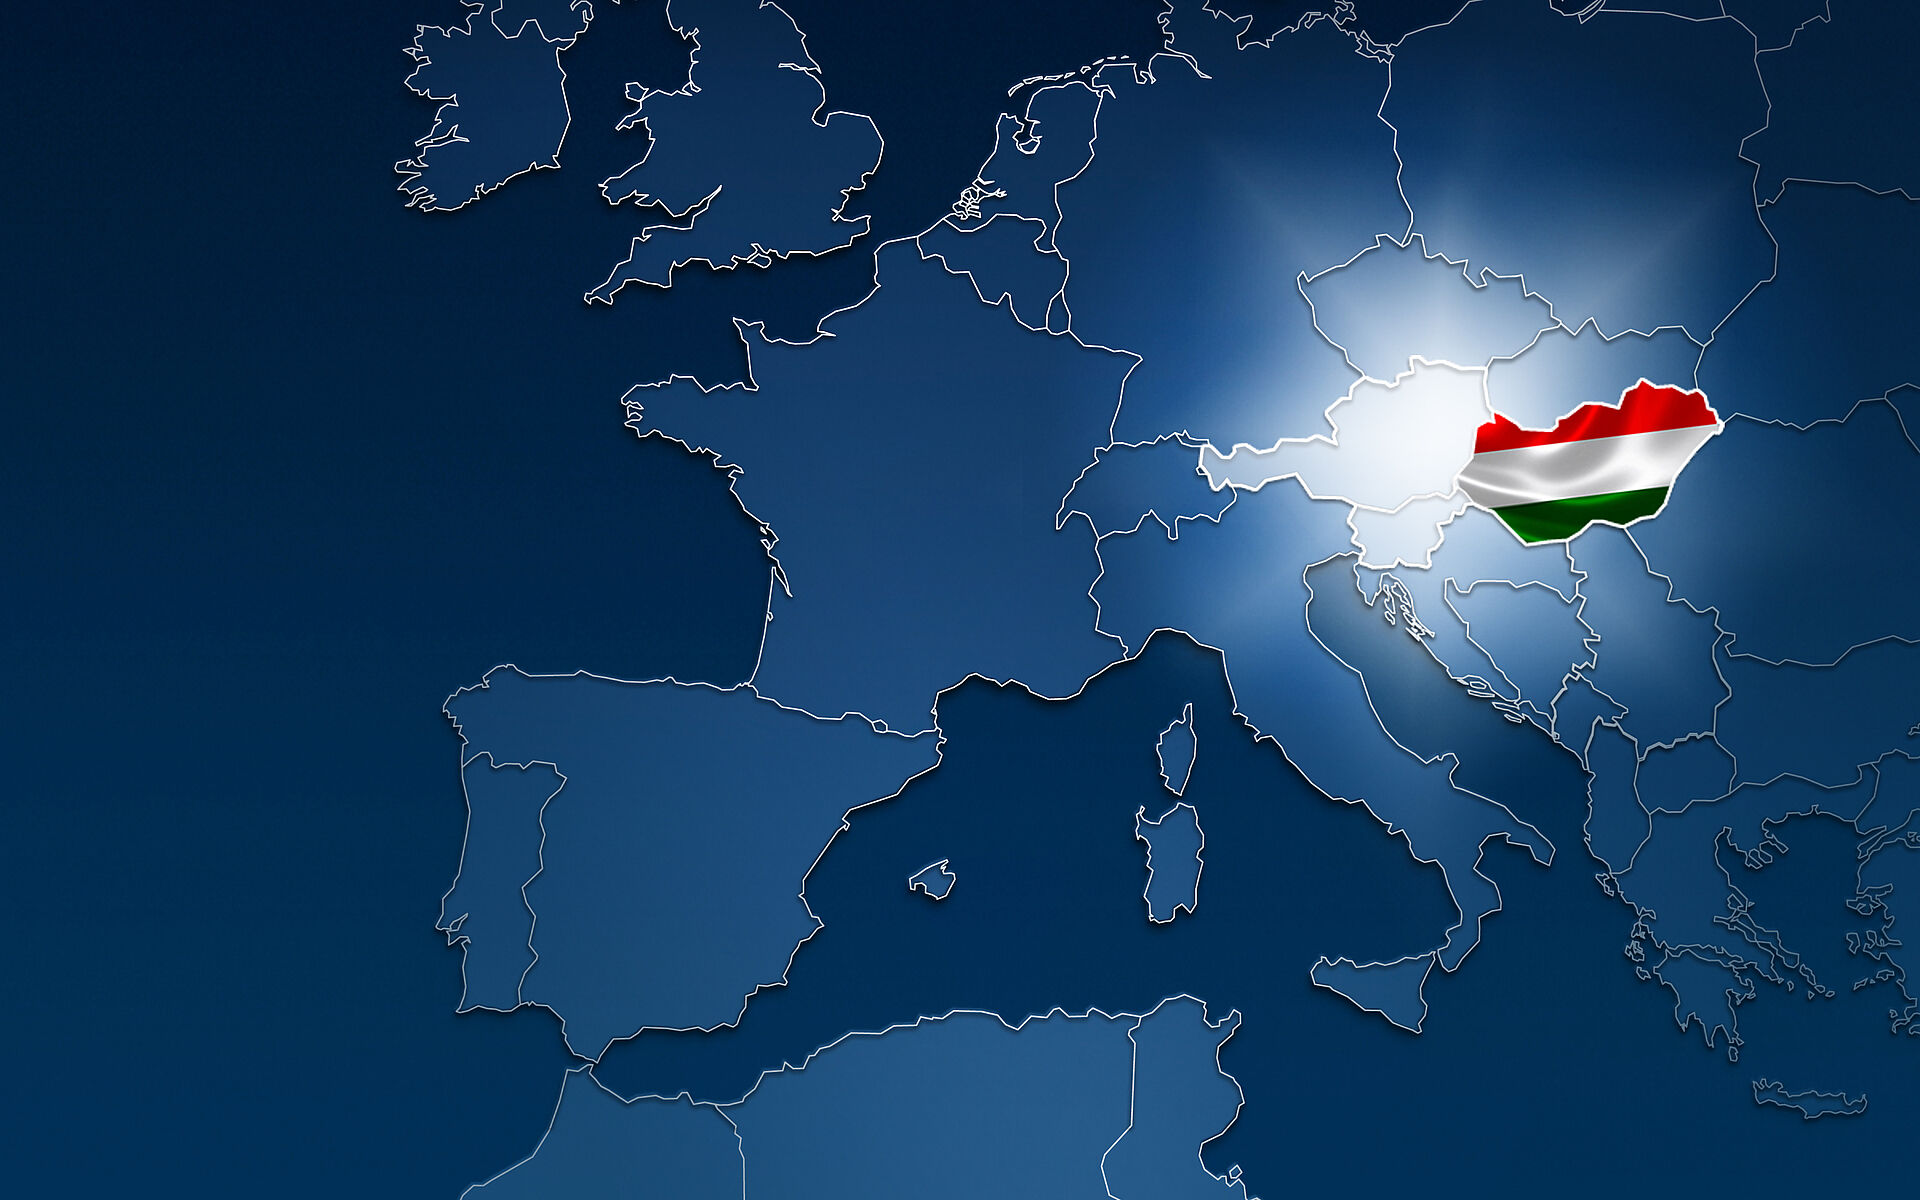 Nieuws verkoop Oostenrijk voor Hongarije